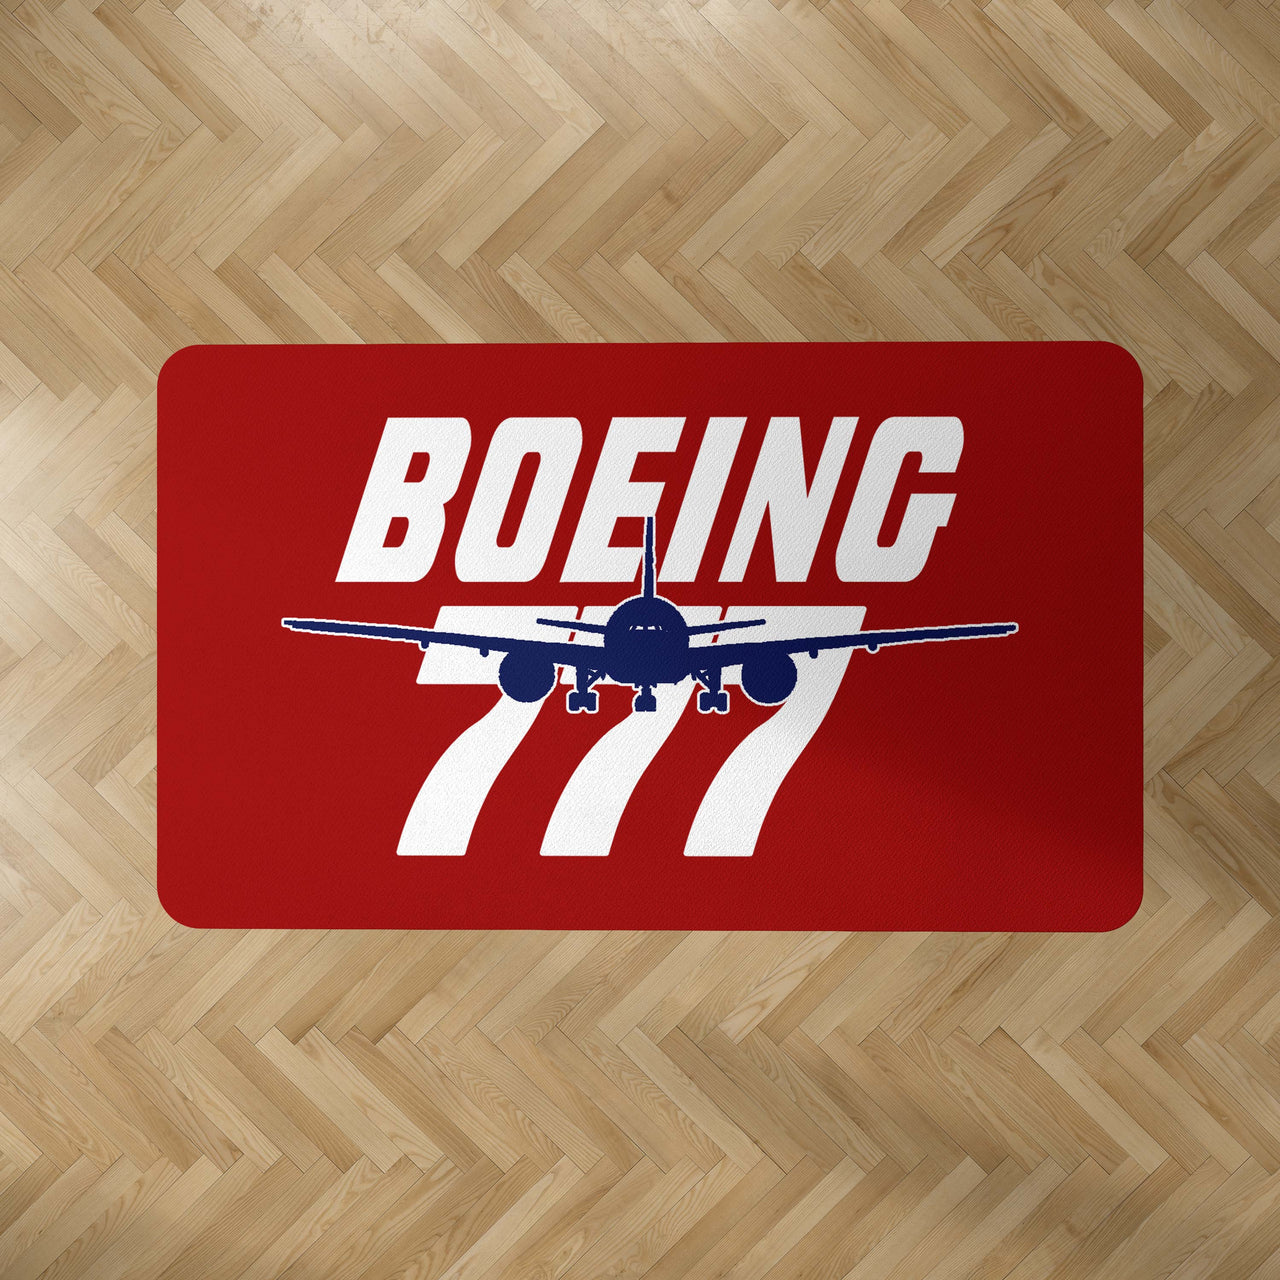 Amazing Boeing 777 Designed Carpet & Floor Mats